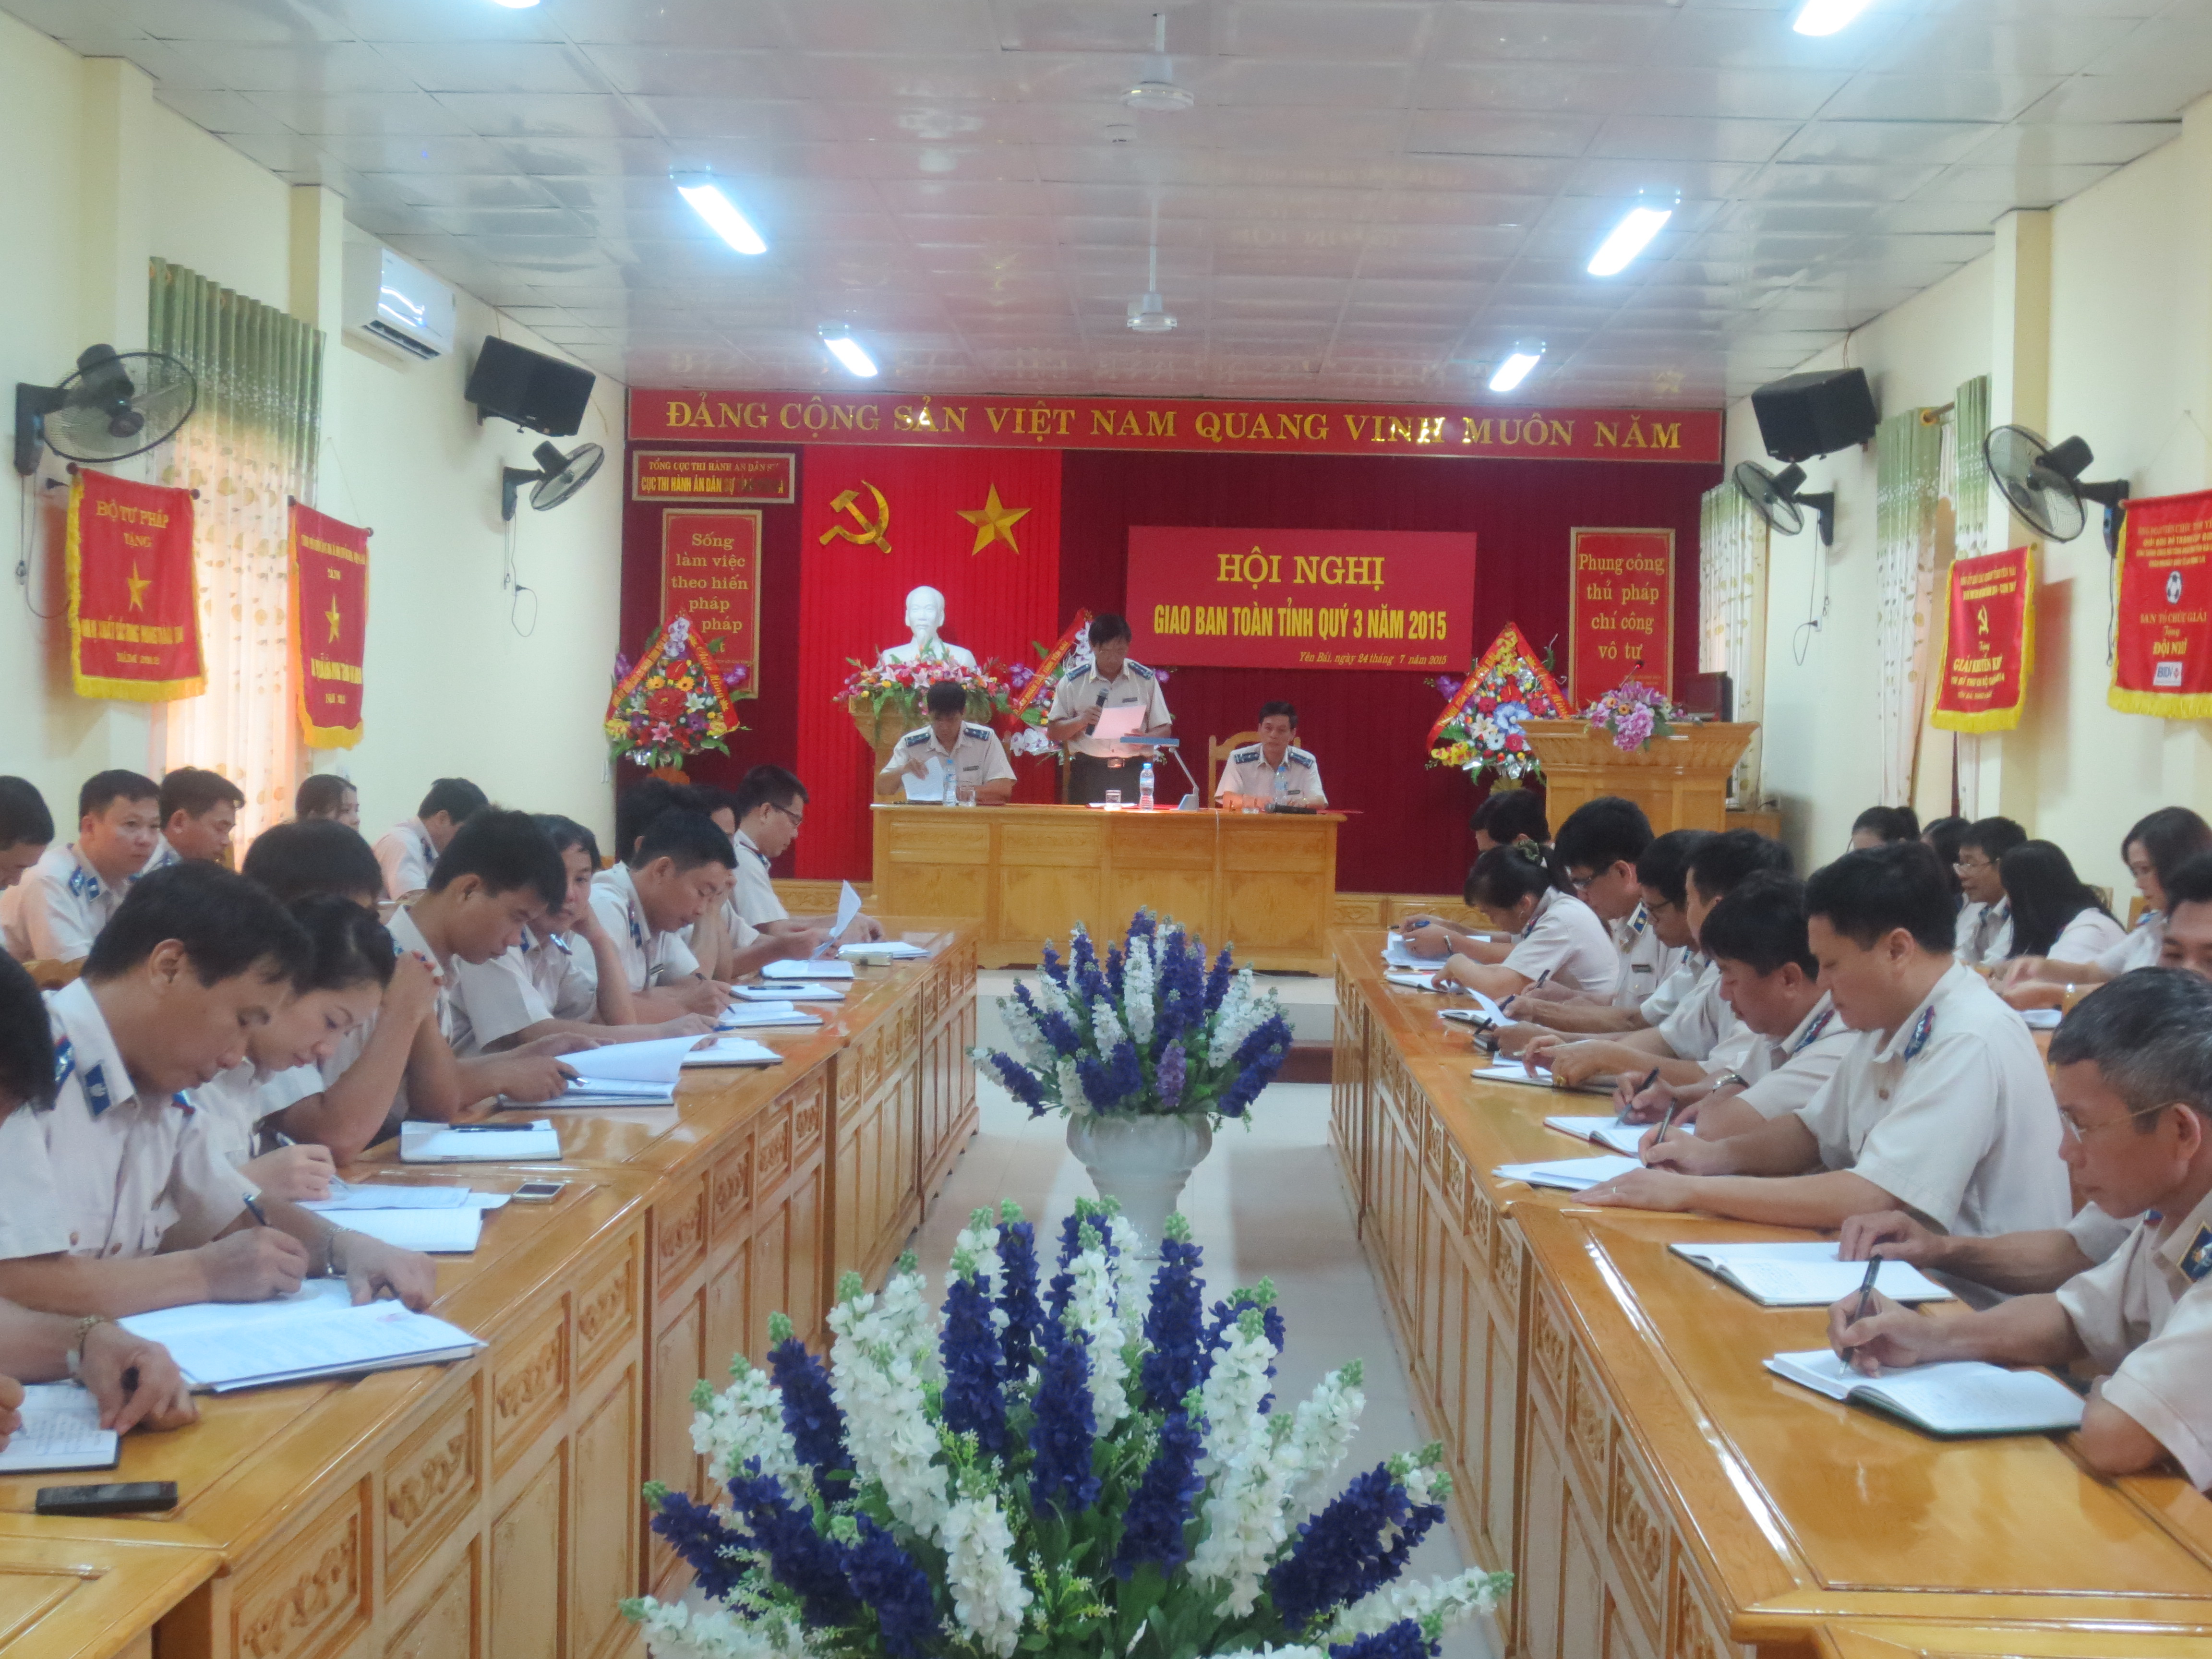 Cục Thi hành án dân sự tỉnh Yên Bái tổ chức Hội nghị Giao ban toàn tỉnh quý III năm 2015